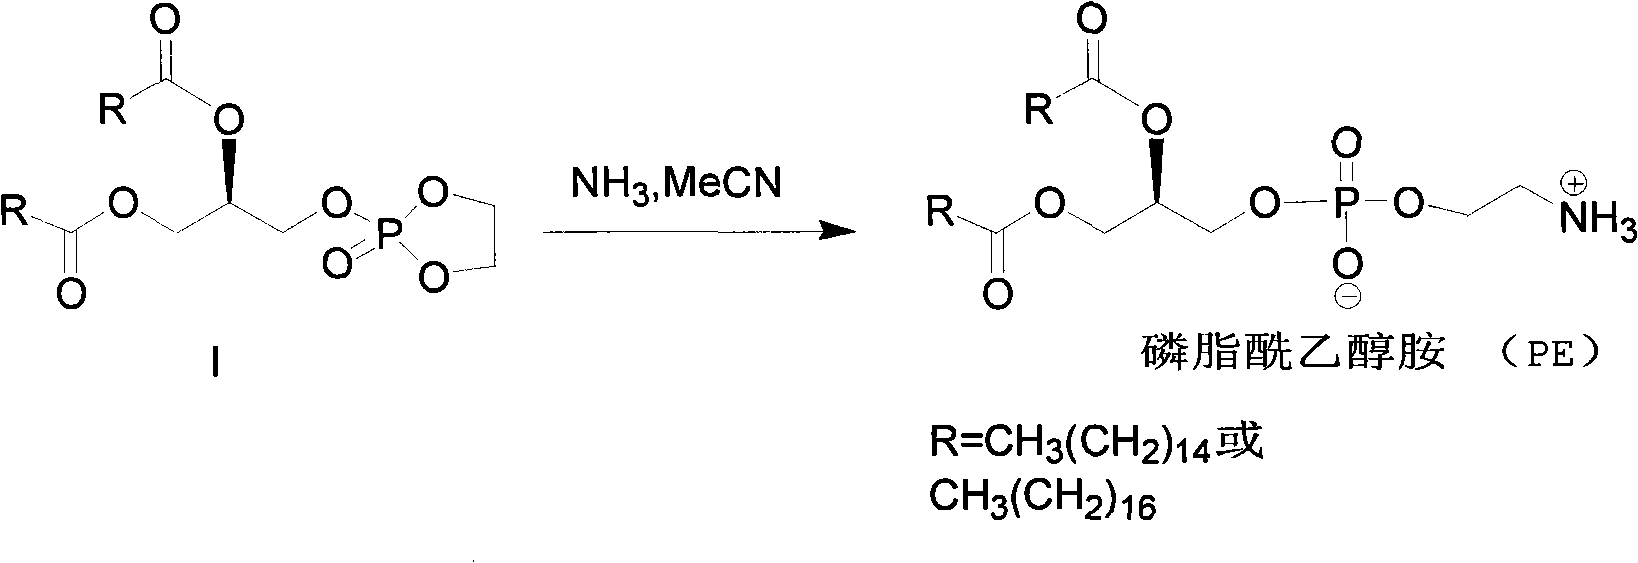 Method for synthesizing PE (Phosphatidyl Ethanolamine)